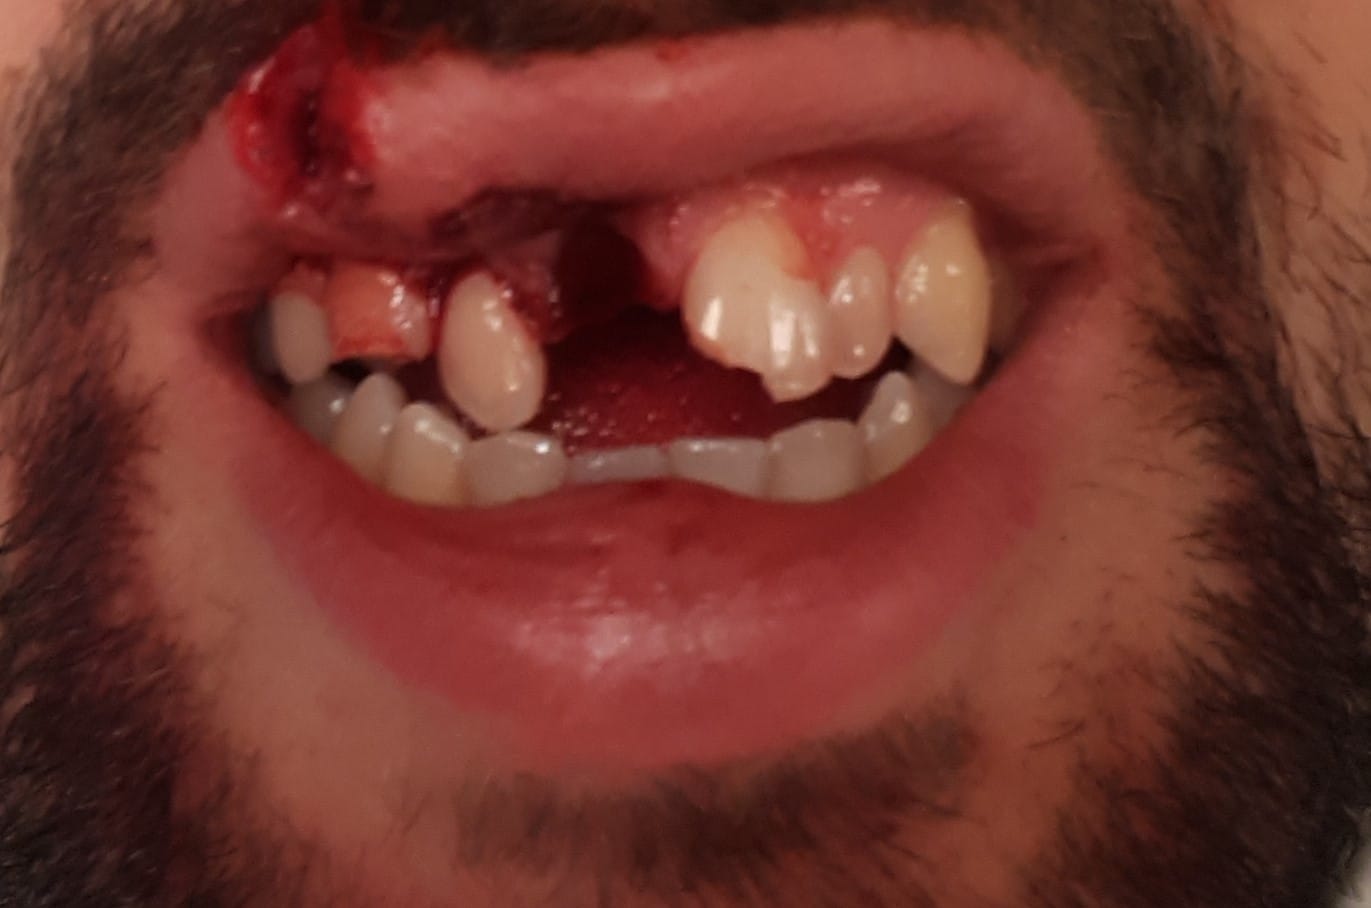 Durch den Sturz hat sich das Opfer einige Zähne ausgeschlagen.